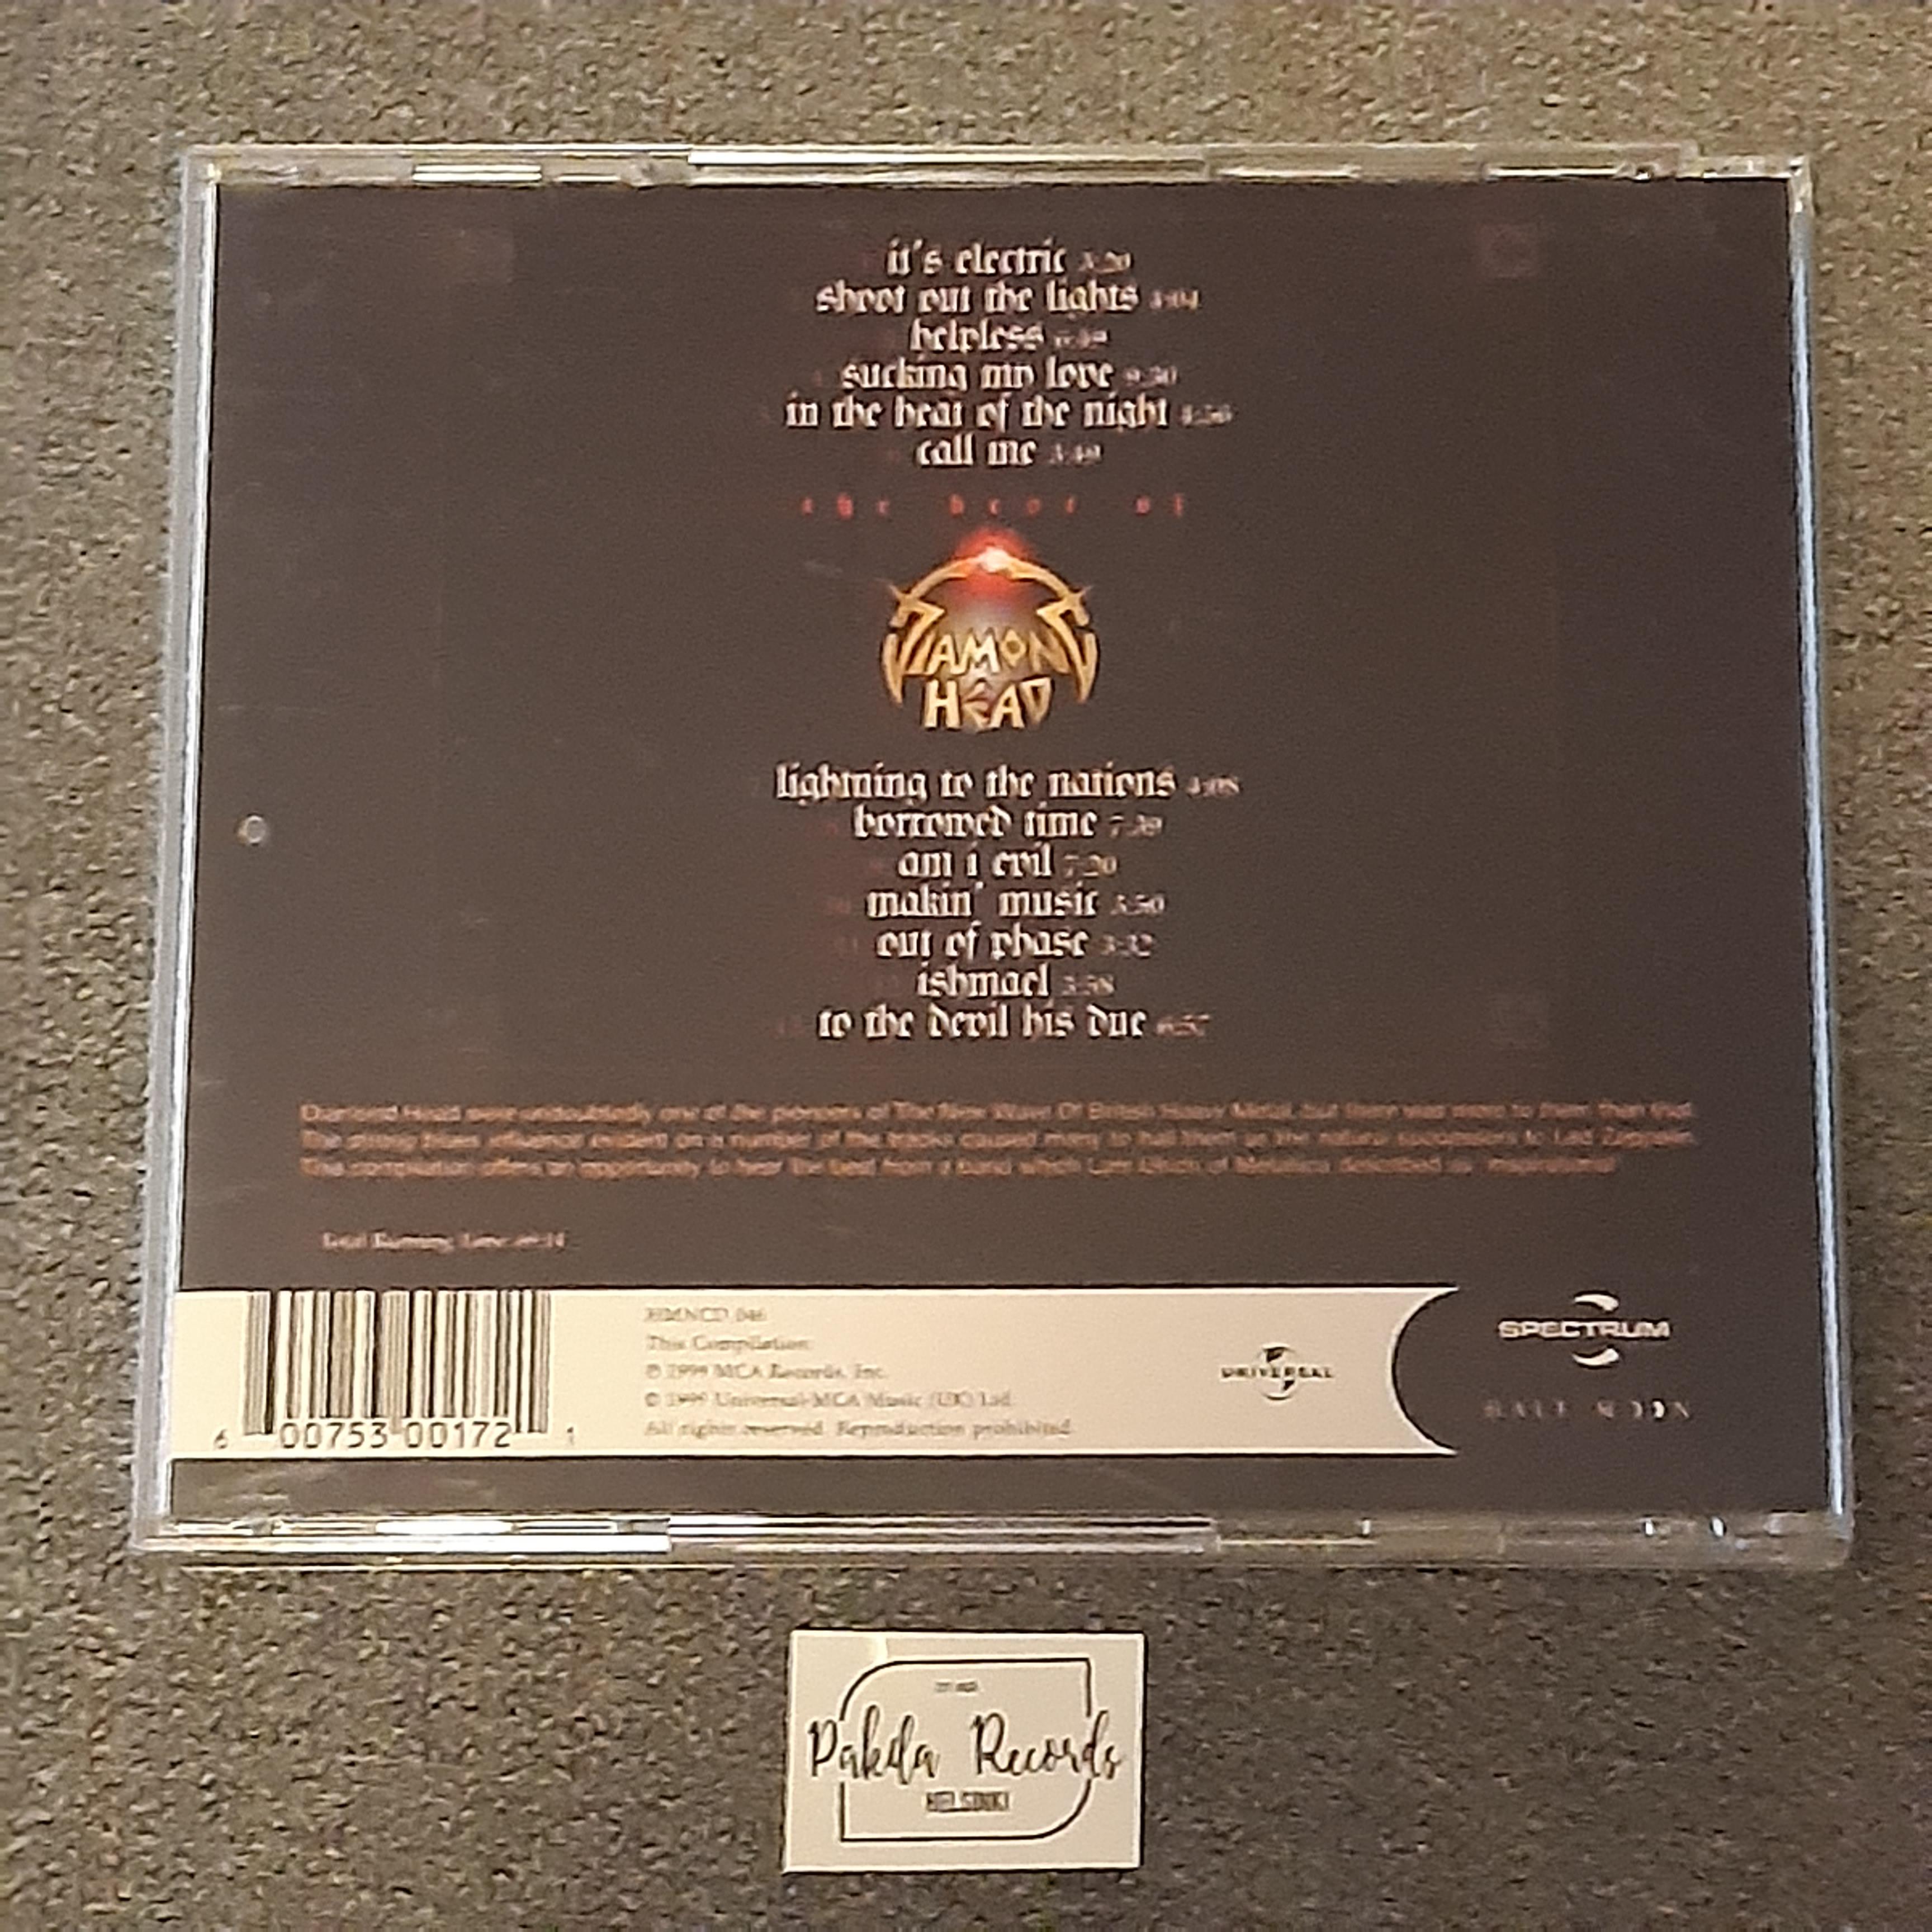 Diamond Head - The Best Of Diamond Head - CD (käytetty)